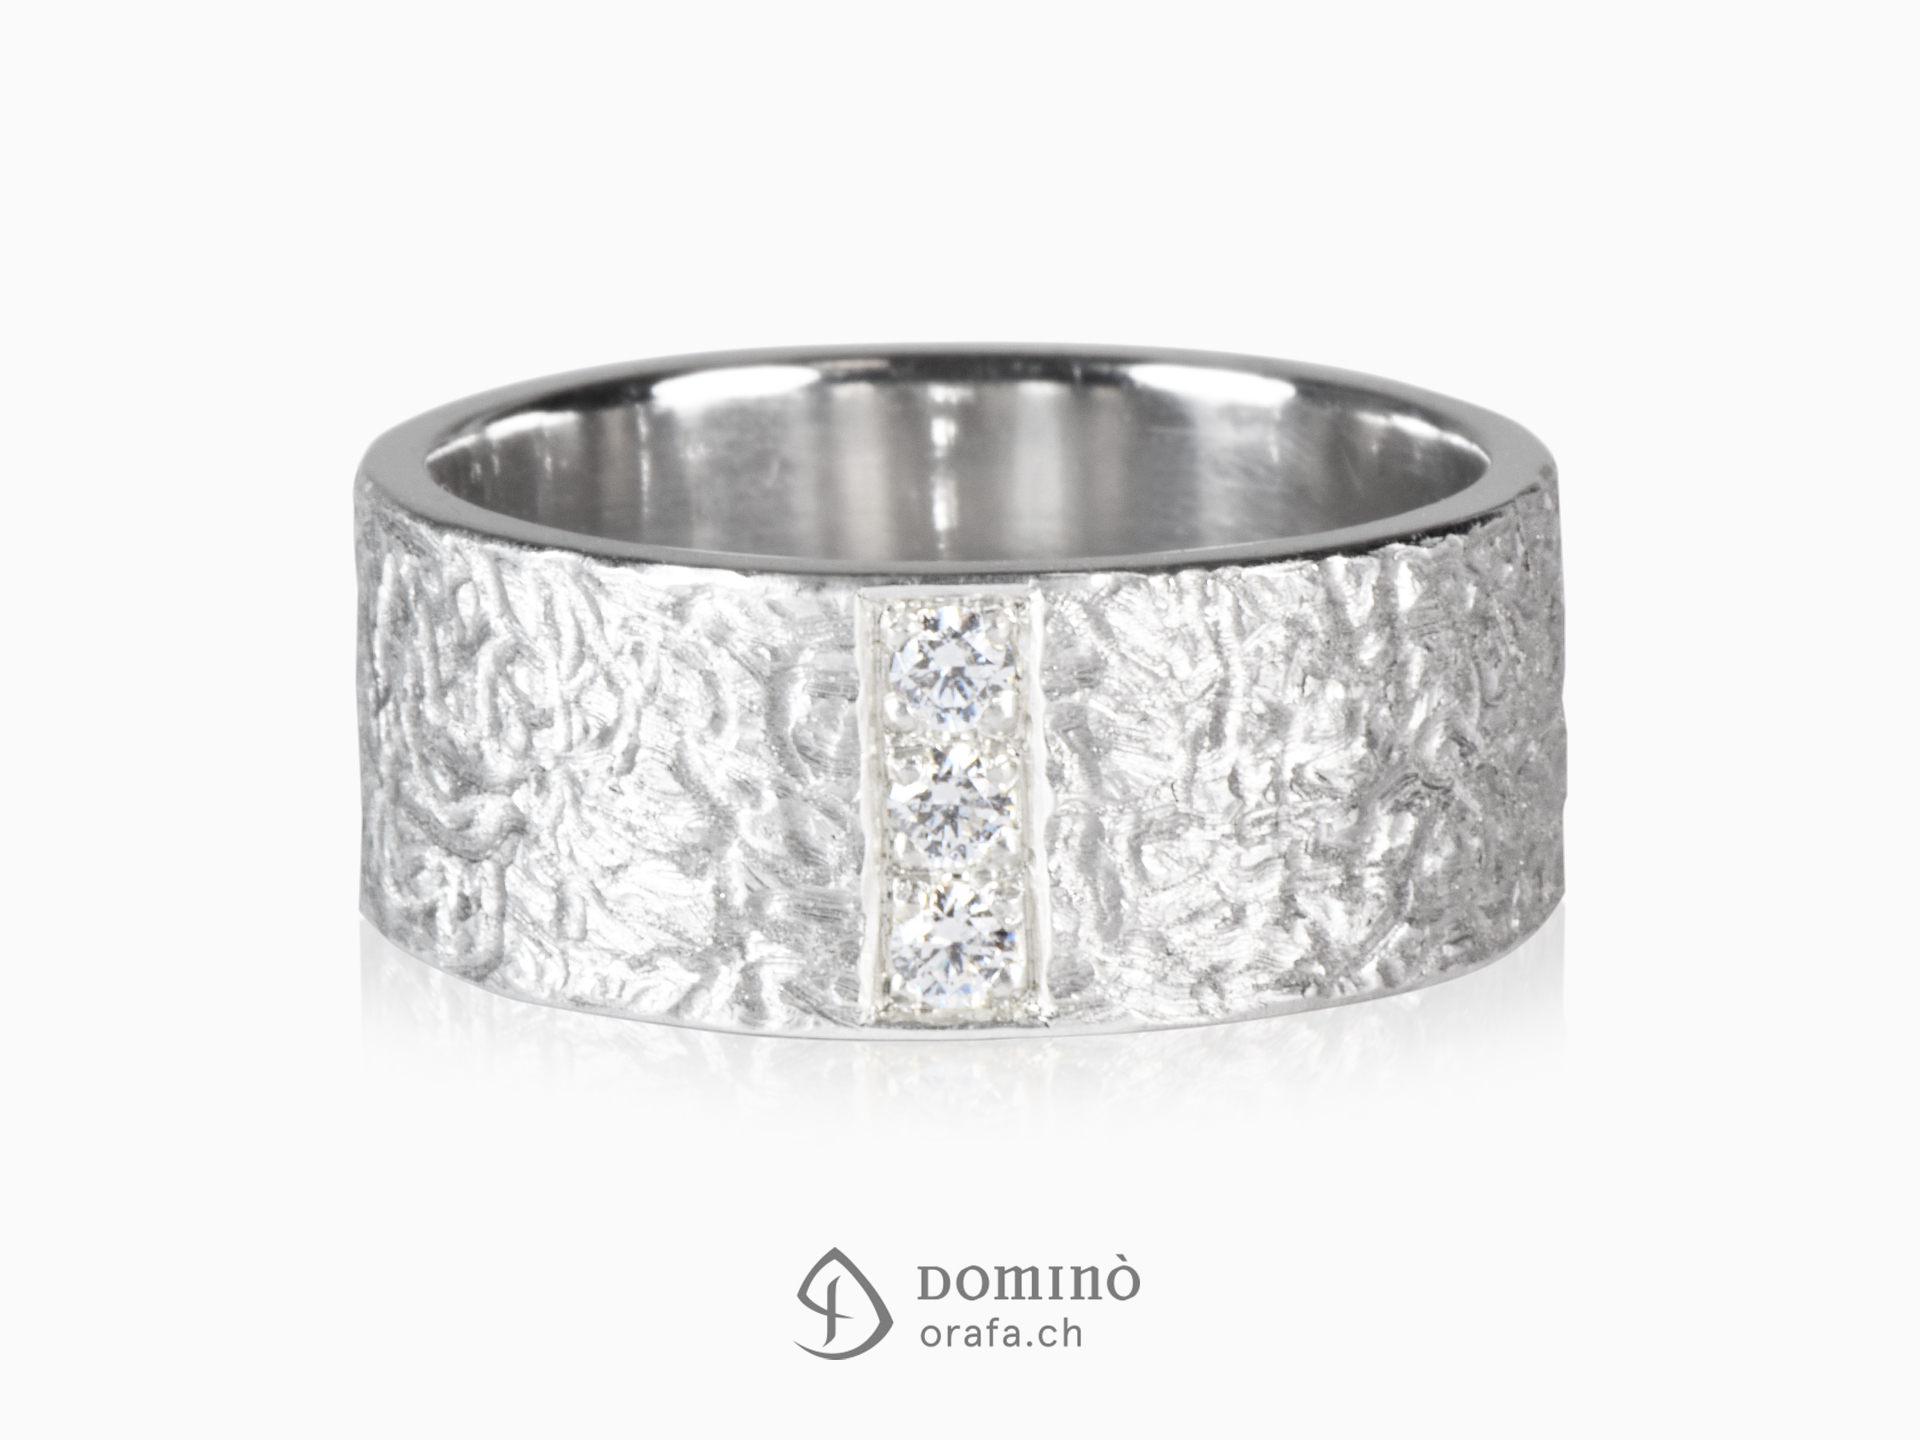 Corteccia ring with diamonds